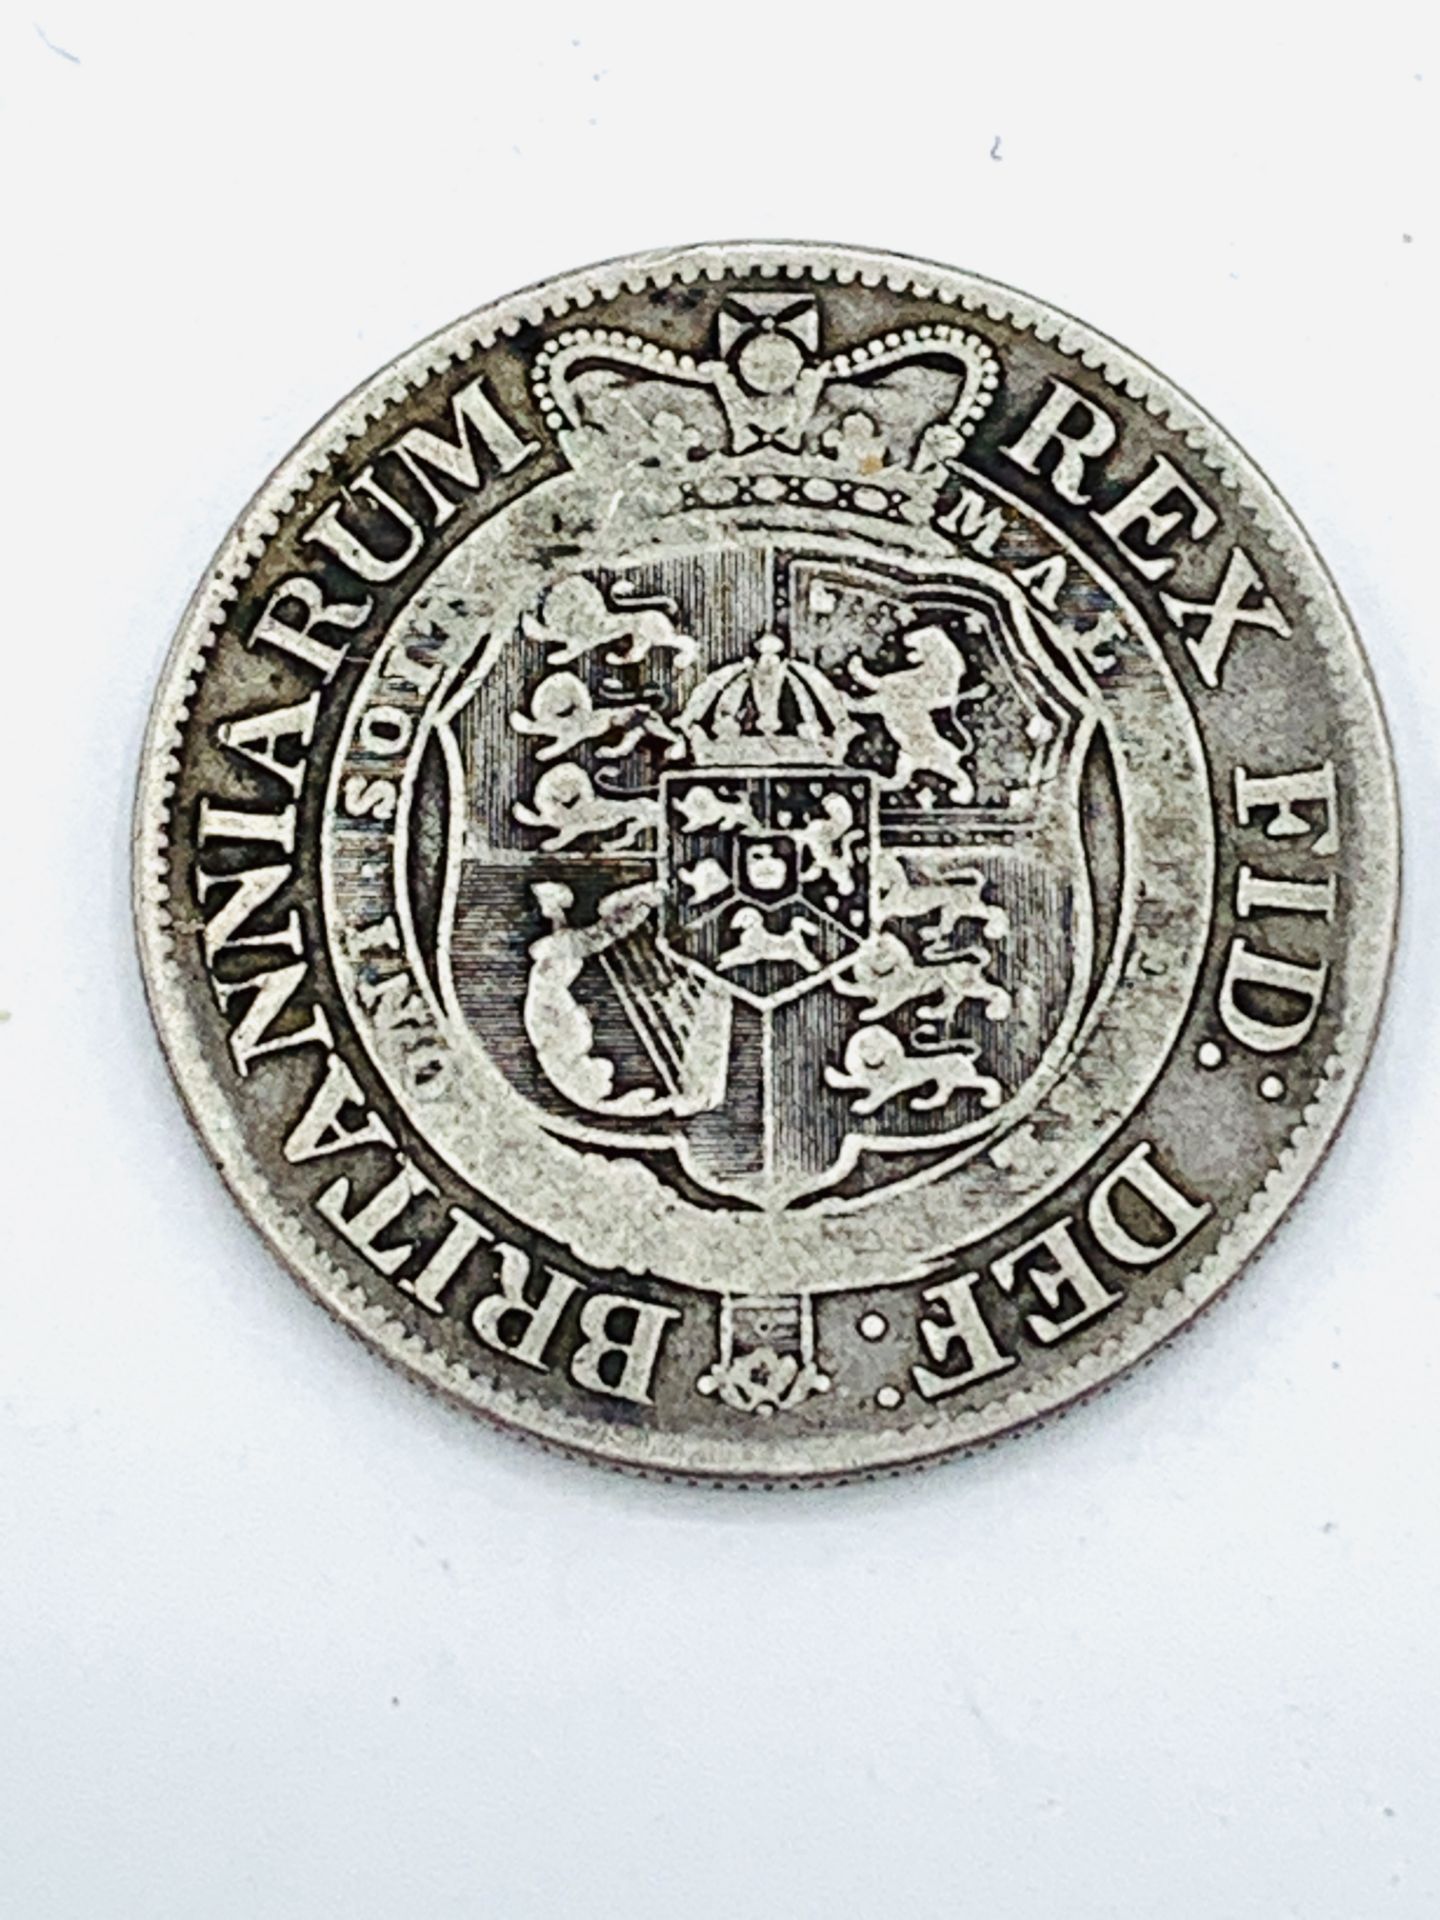 George III silver half crown, 1817. - Image 2 of 2